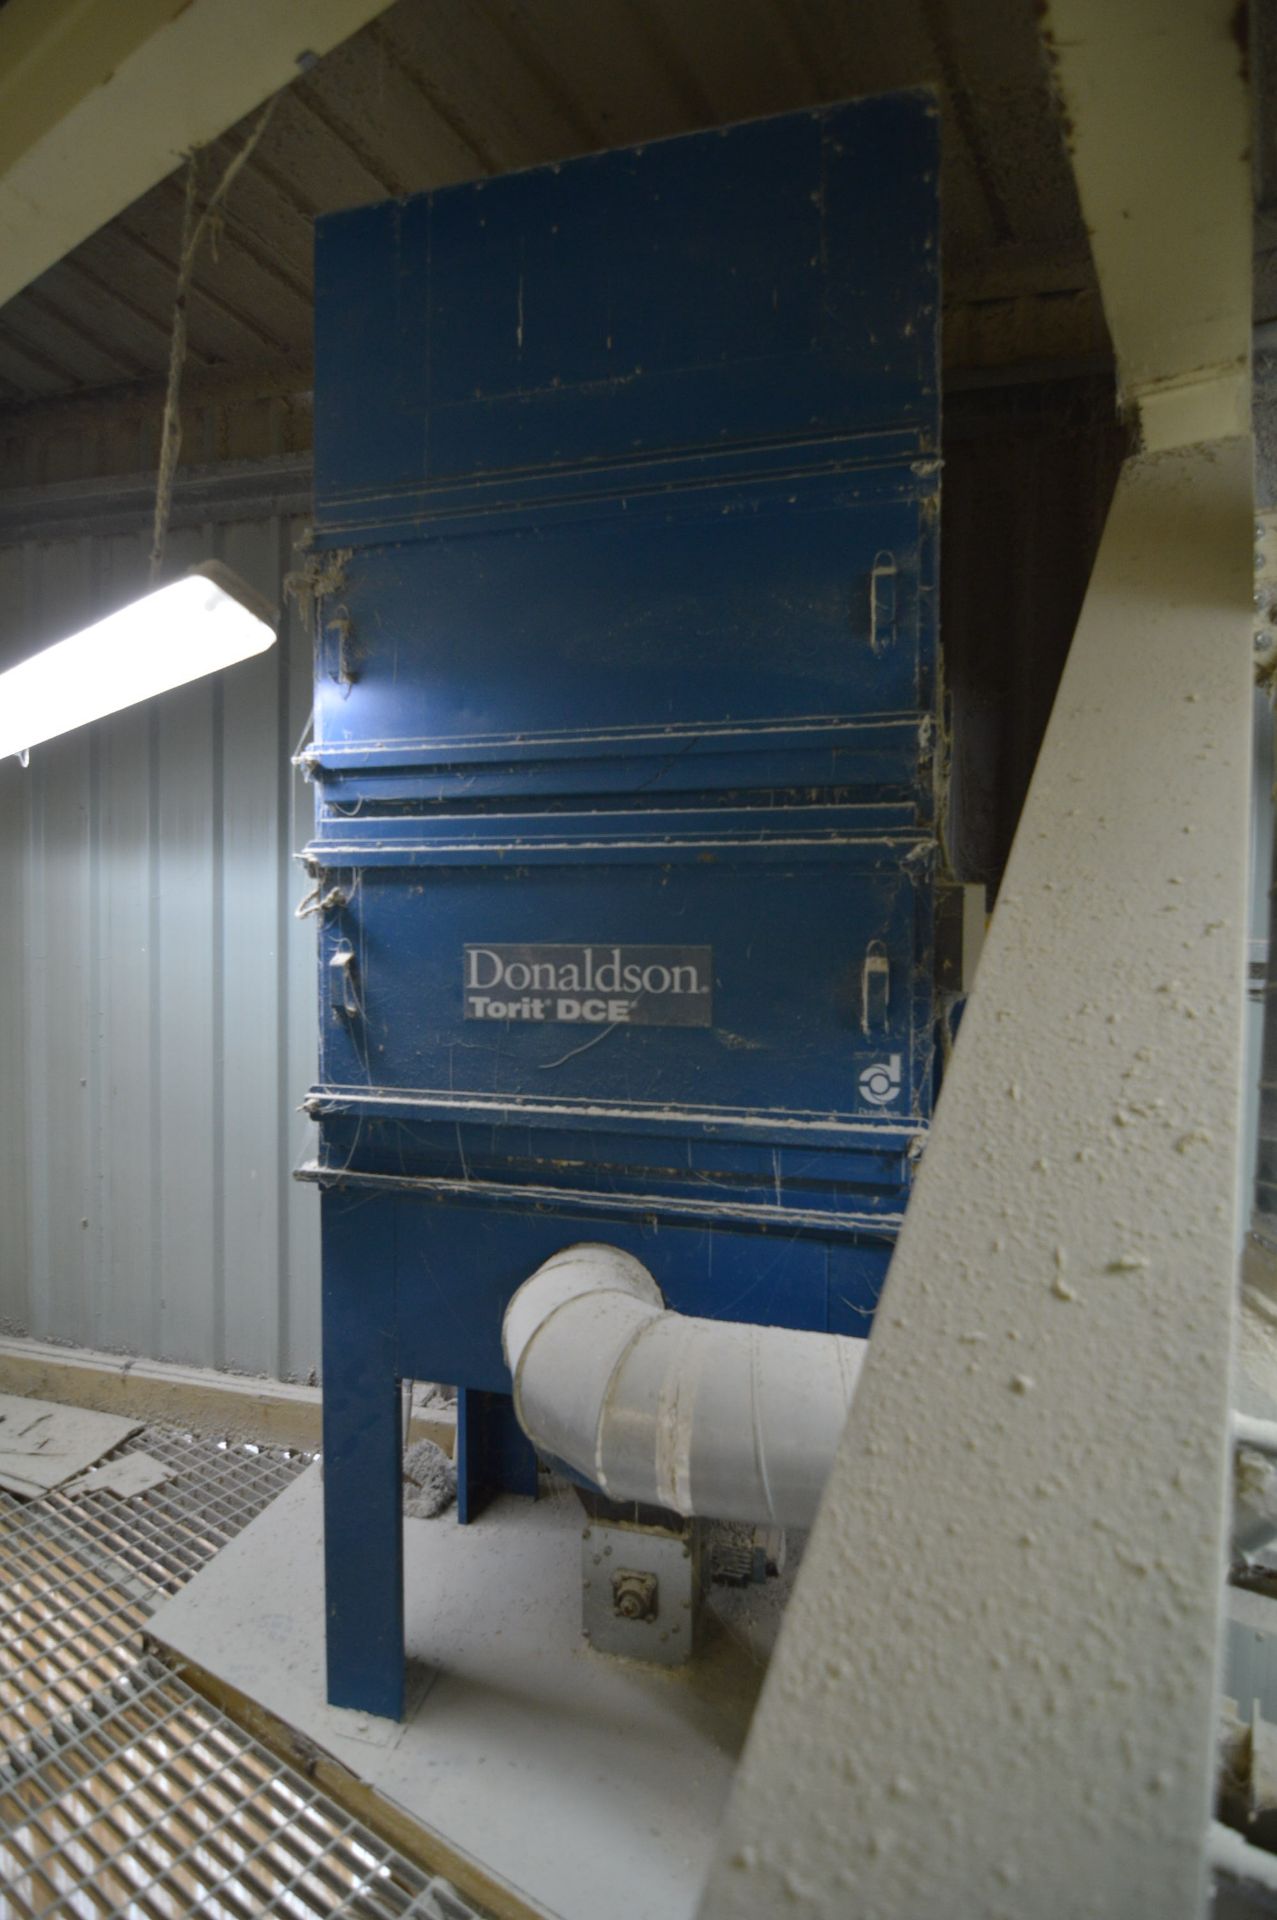 Donaldson Torit DCE UMA253K7 DUST COLLECTION UNIT, serial no. 000460143, year of manufacture 2012, - Bild 2 aus 2